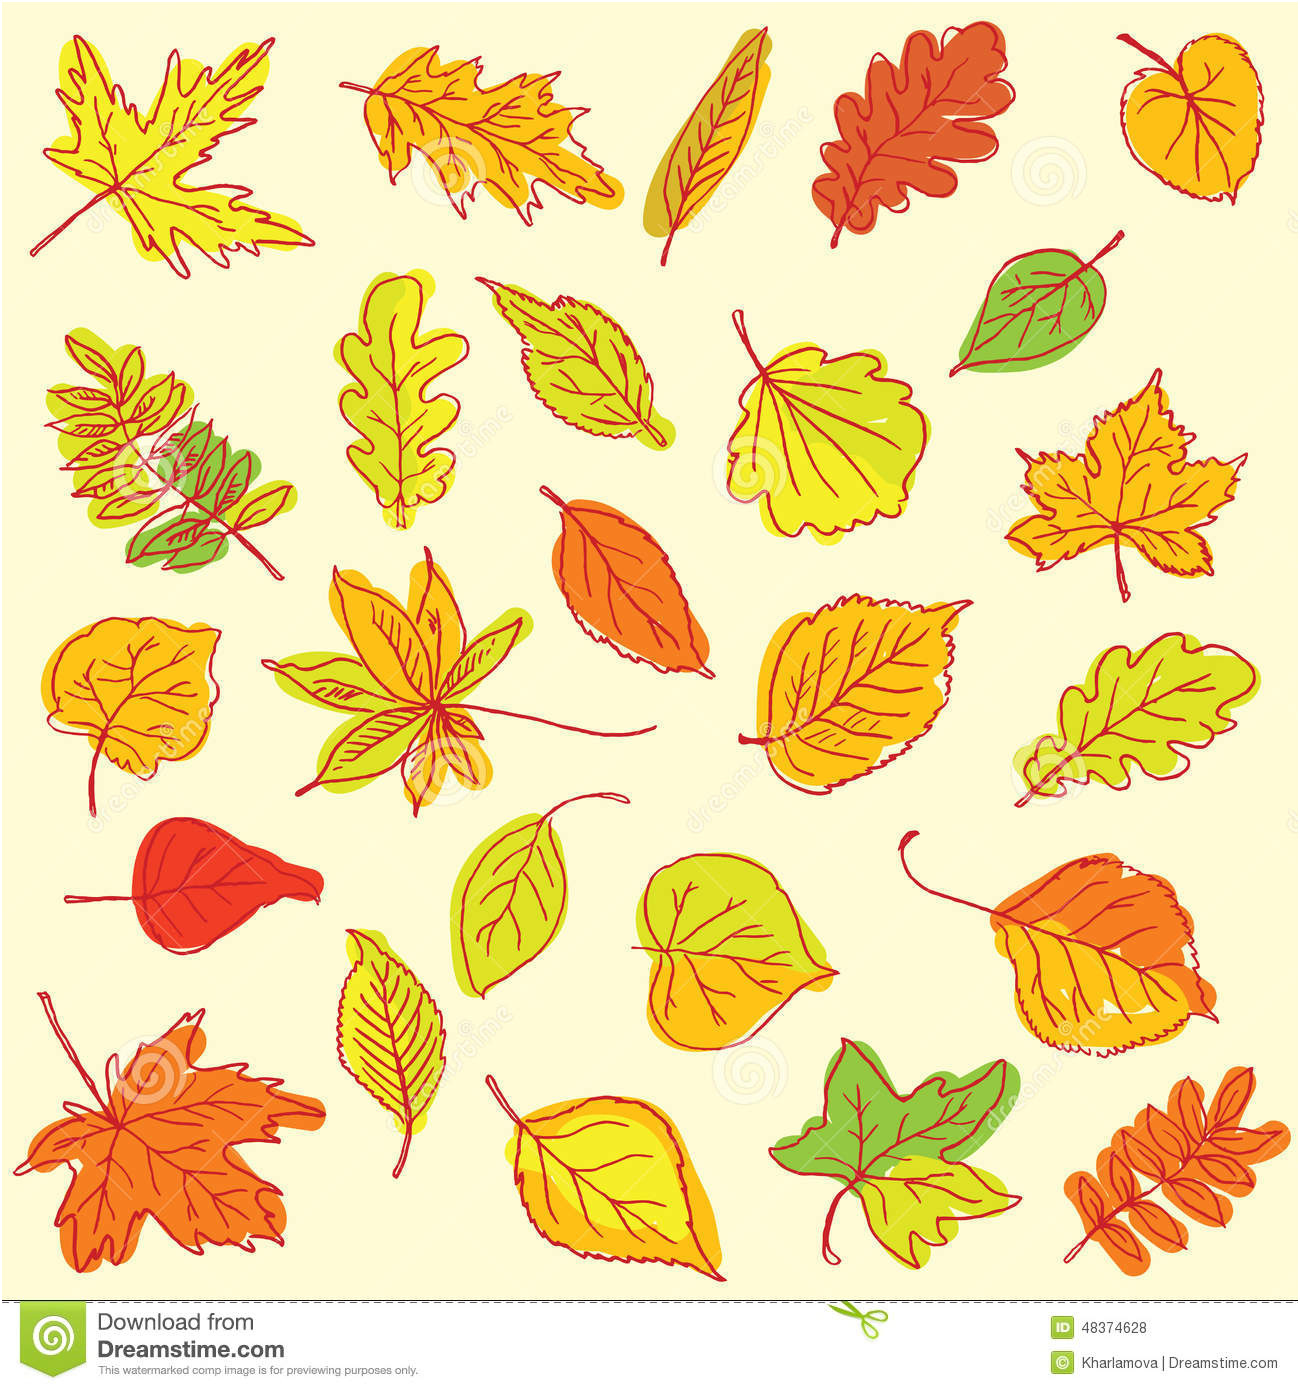 articles de feuilles dautomne de dessin de dessin a main levee sur a dessin de feuille d automne